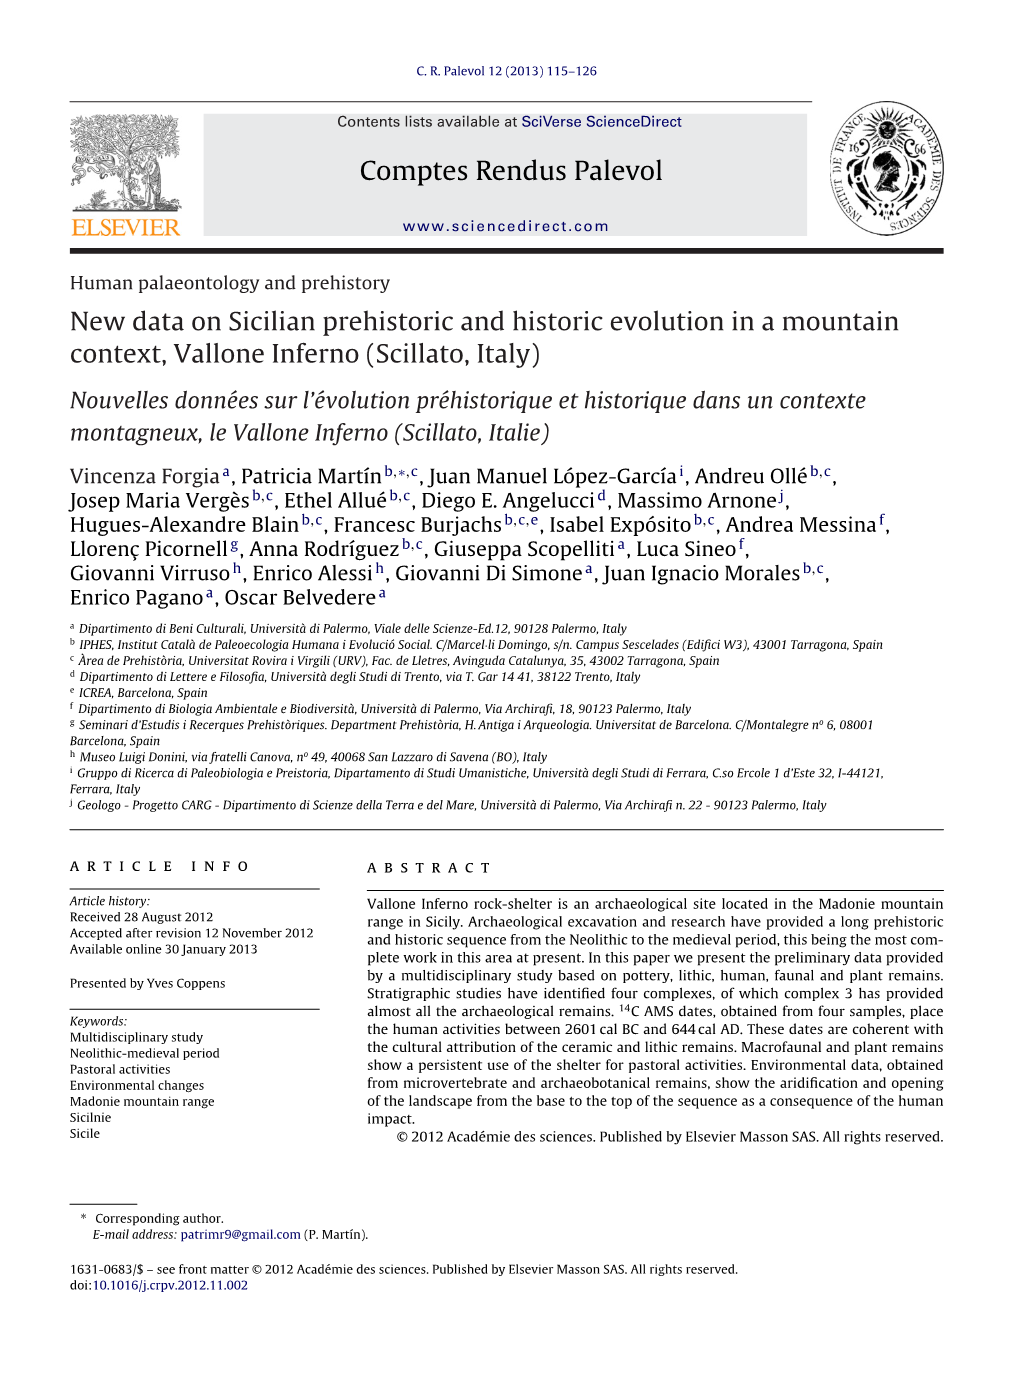 New Data on Sicilian Prehistoric and Historic Evolution in a Mountain Context, Vallone Inferno (Scillato, Italy)